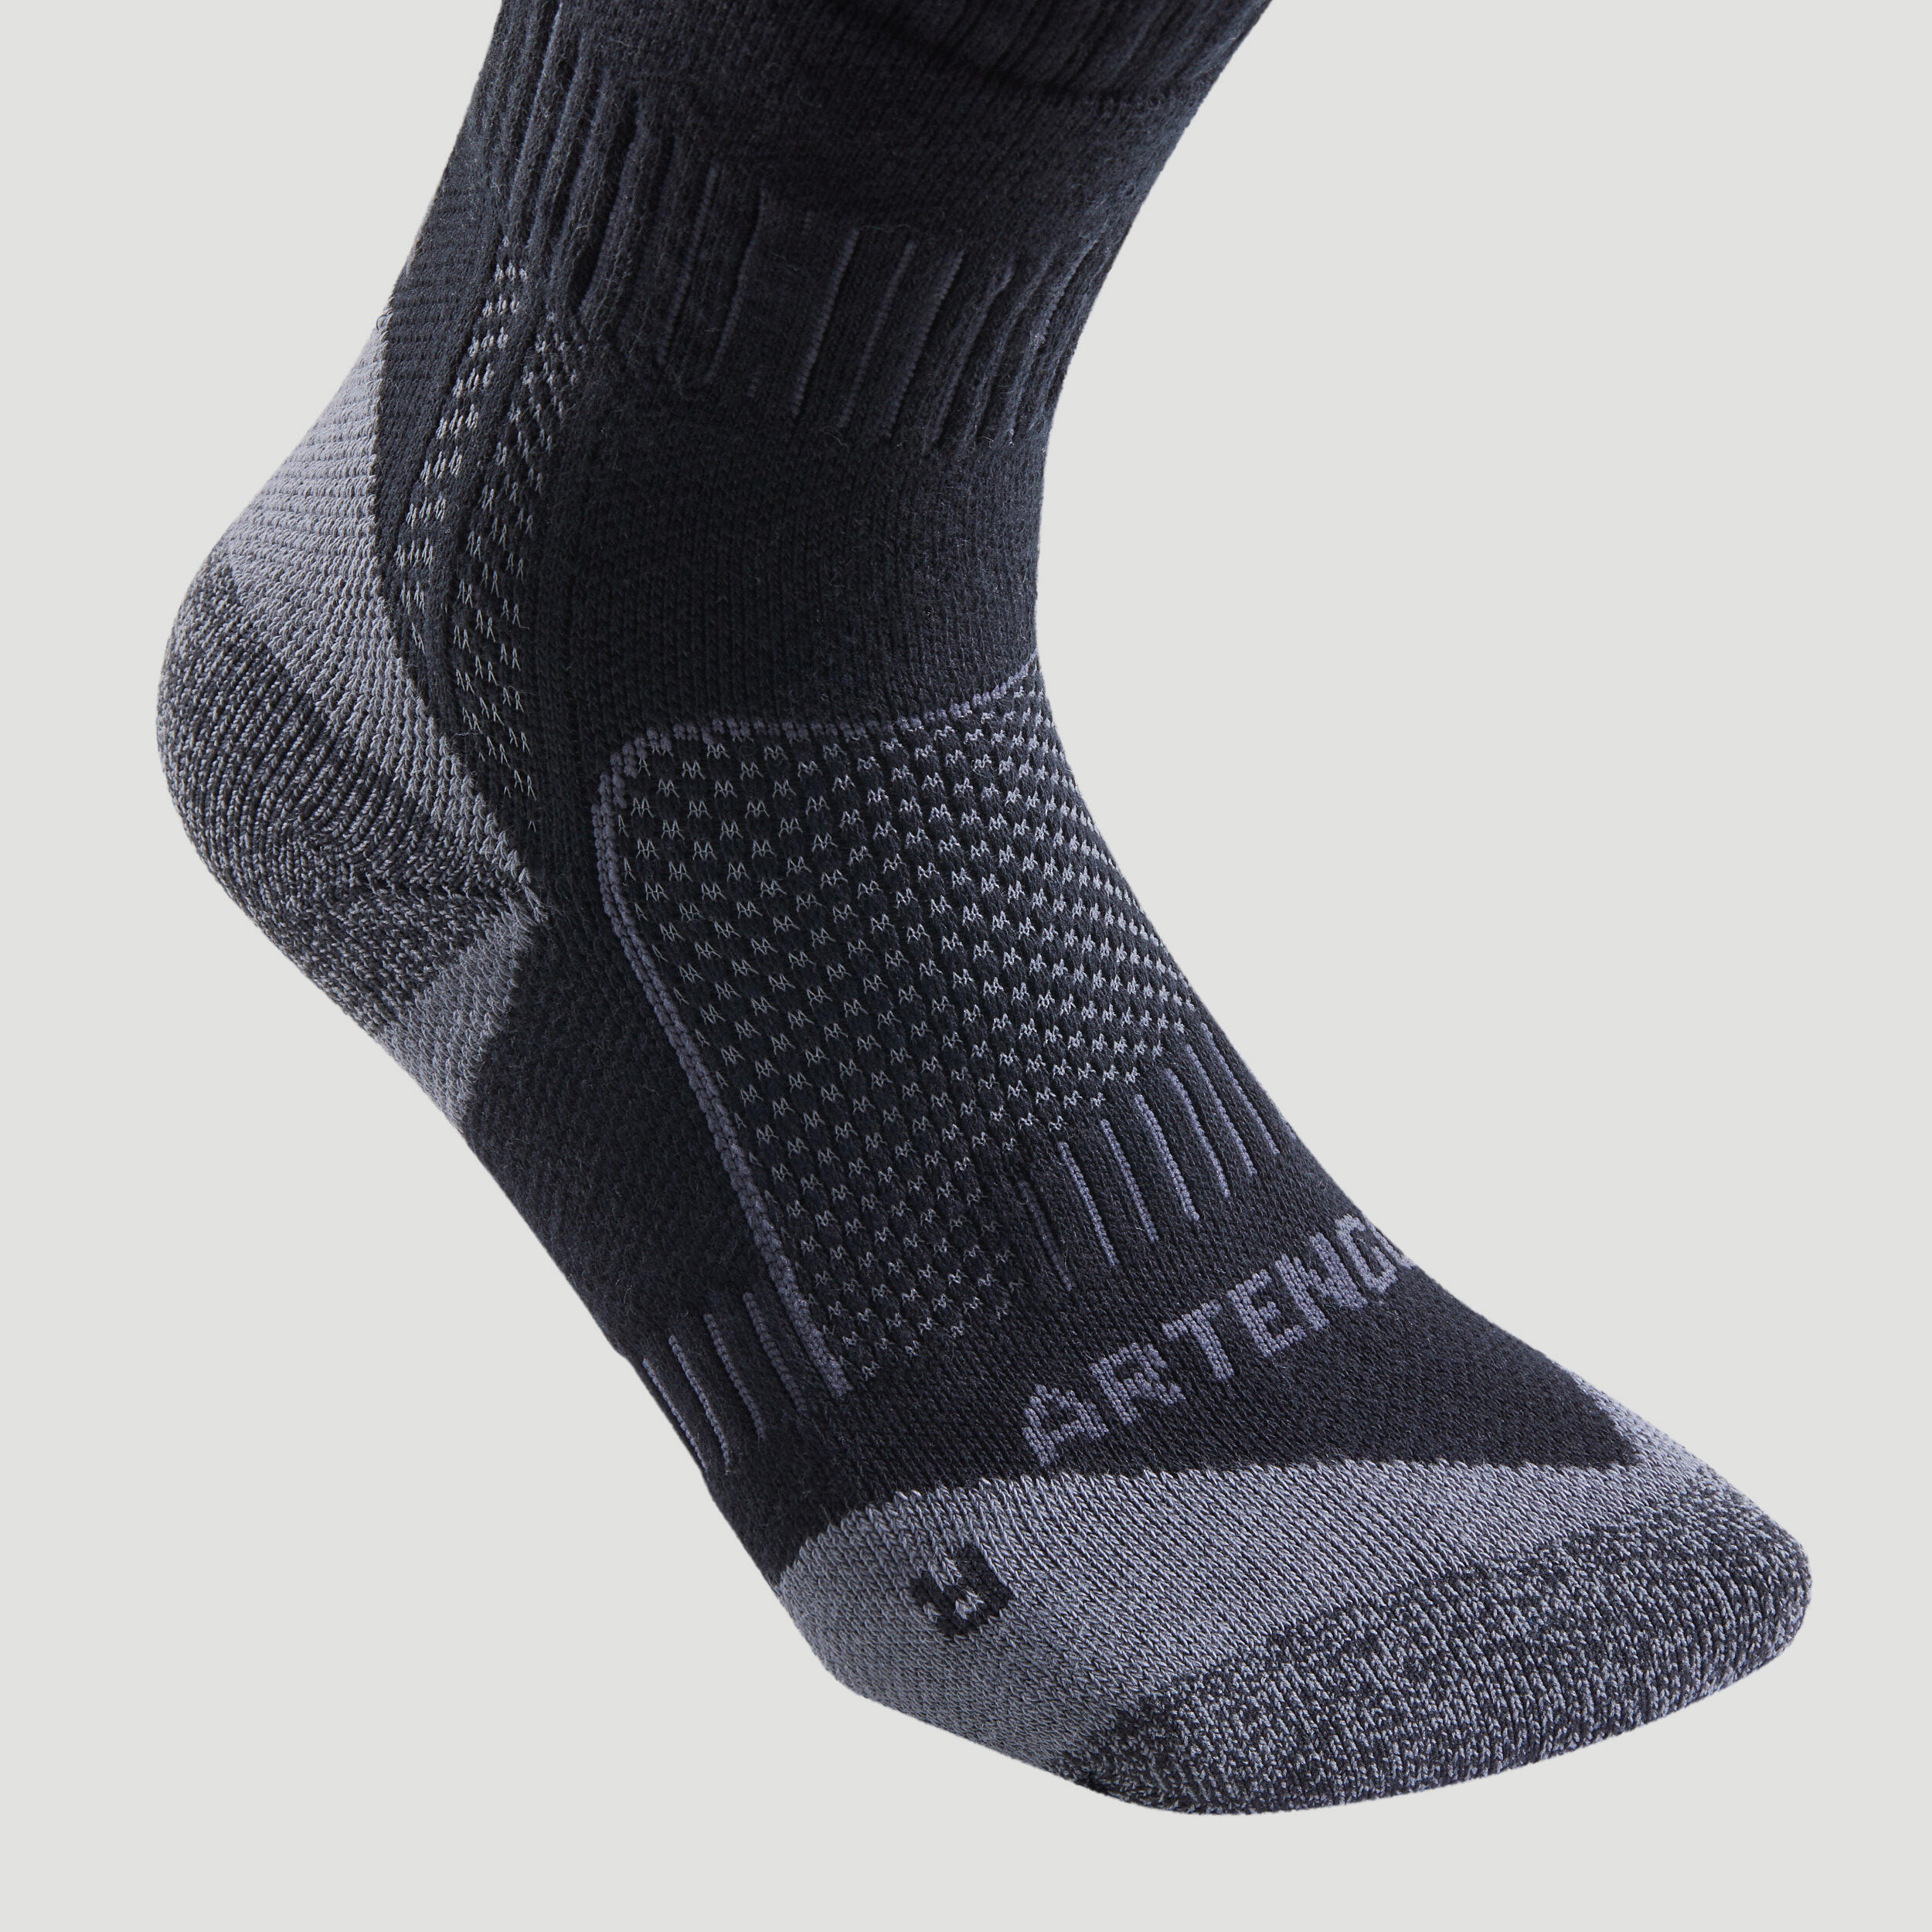 High Socks - RS 900 Grey - Black - Artengo - Decathlon